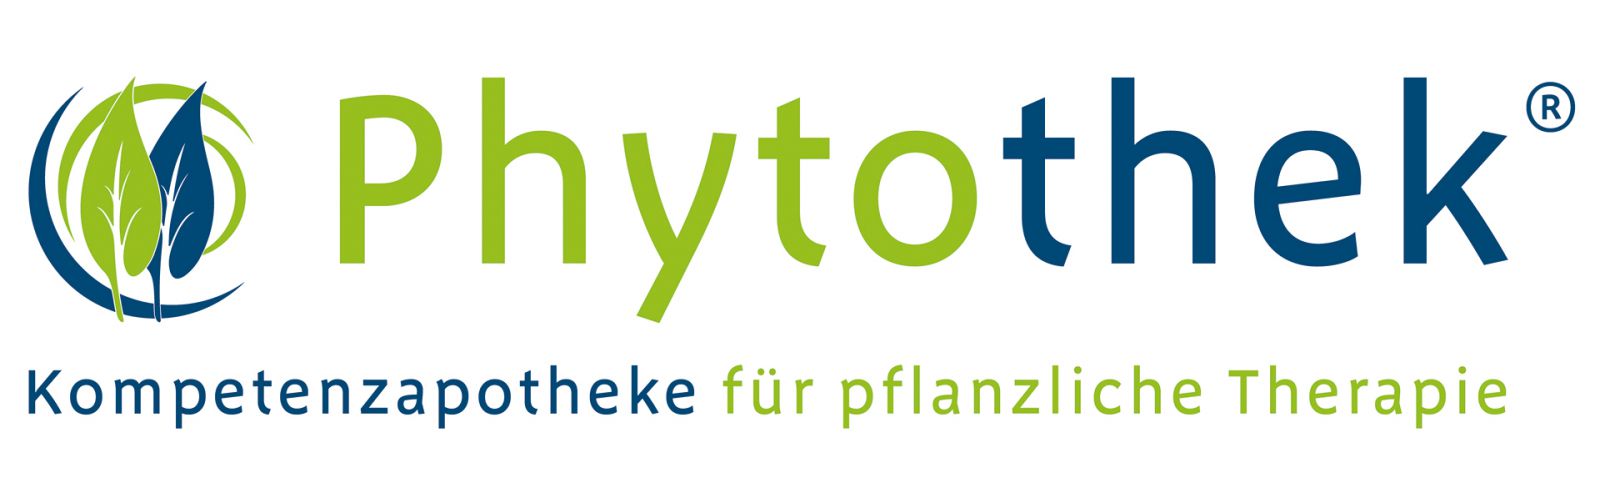 phytothek-logo